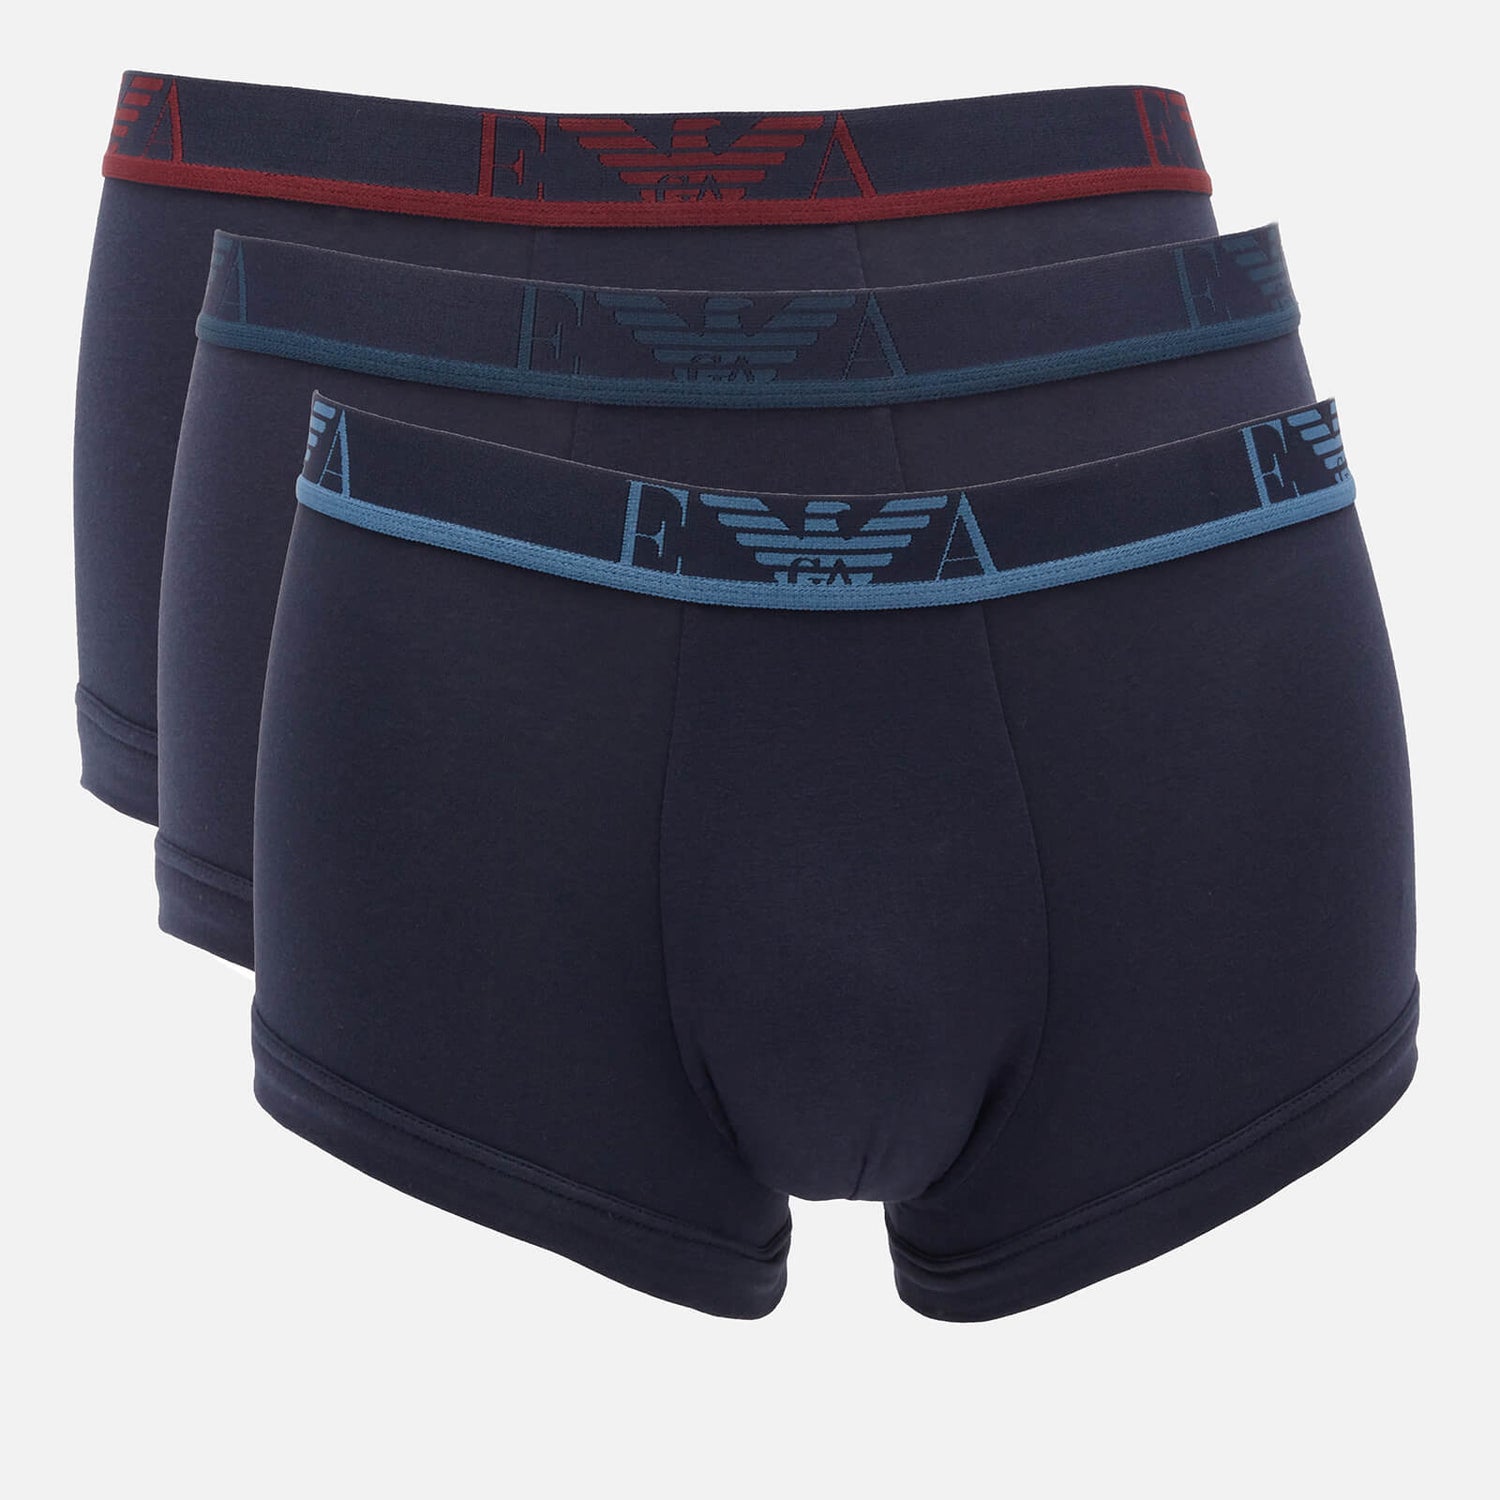 Emporio Armani Underwear Men's 3-Pack Trunks - Marine